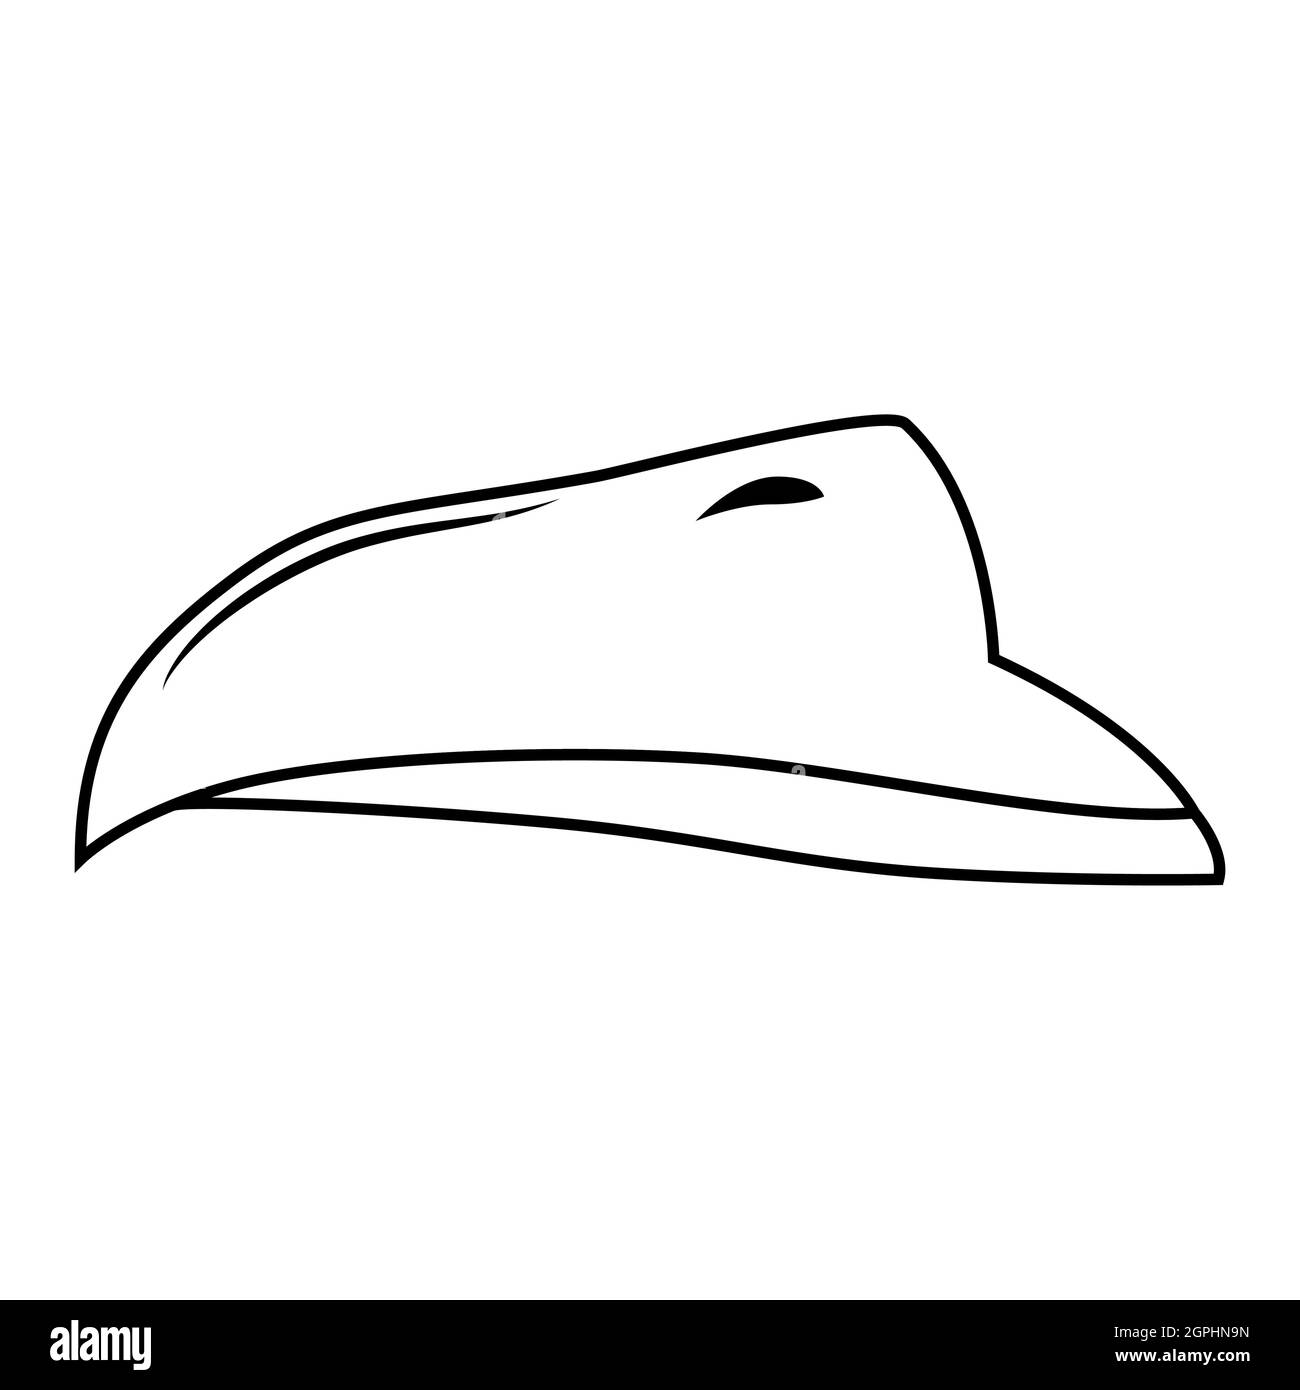 Schnabel von Vogel Vektor-Design. Umrissdarstellung isoliert auf weißem Hintergrund. Stock Vektor